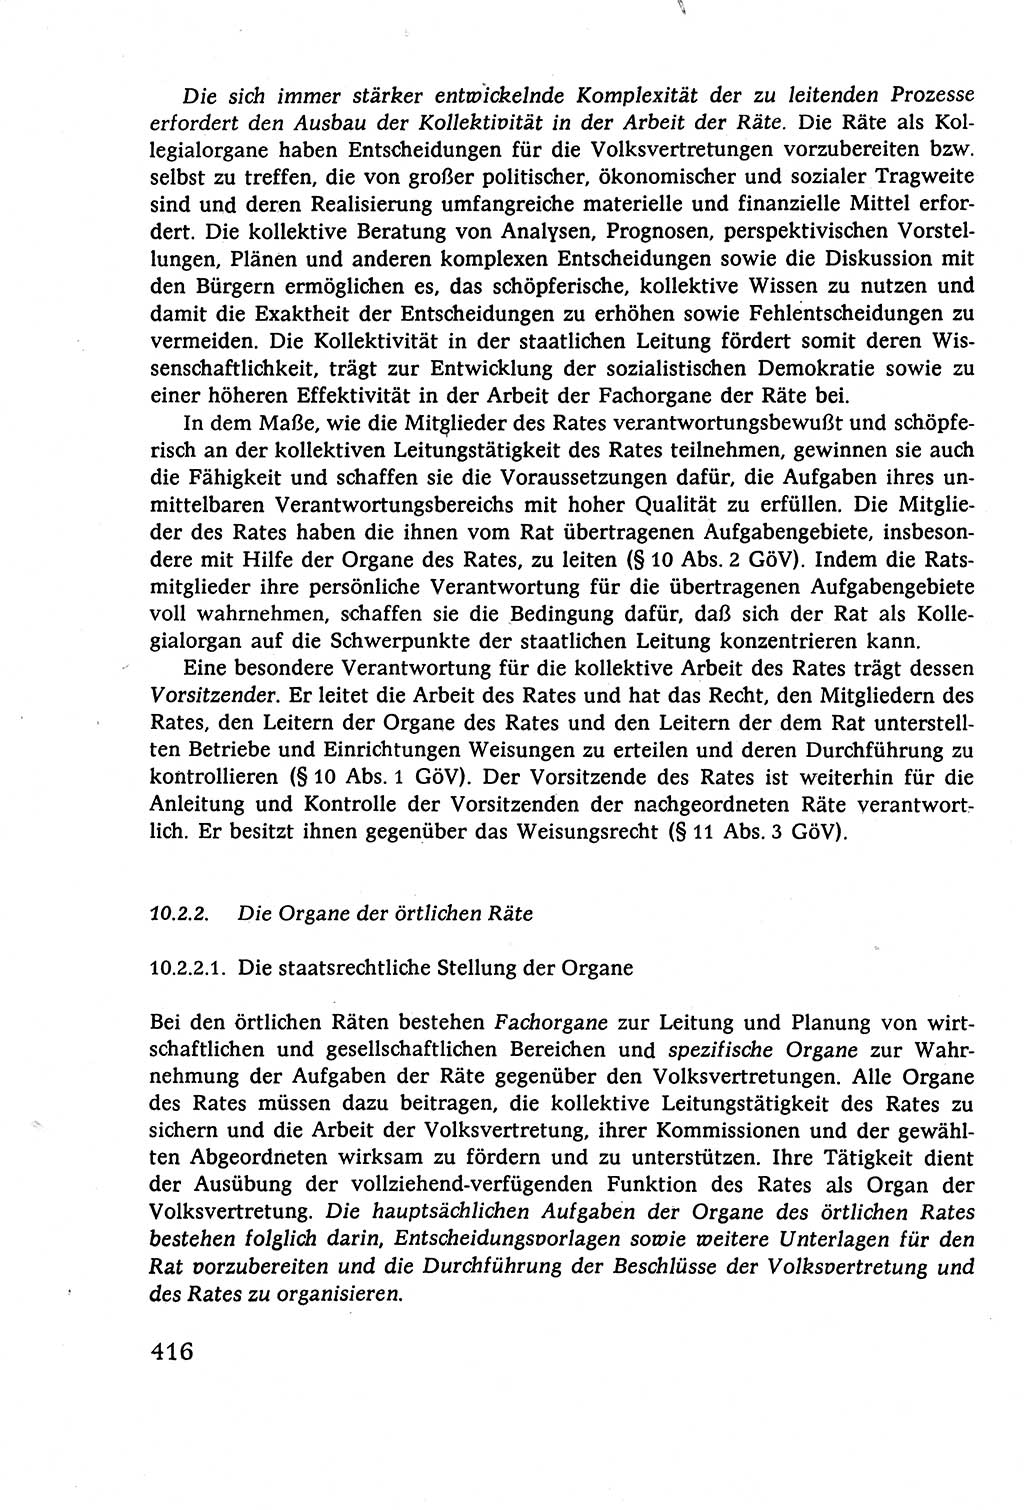 Staatsrecht der DDR (Deutsche Demokratische Republik), Lehrbuch 1977, Seite 416 (St.-R. DDR Lb. 1977, S. 416)